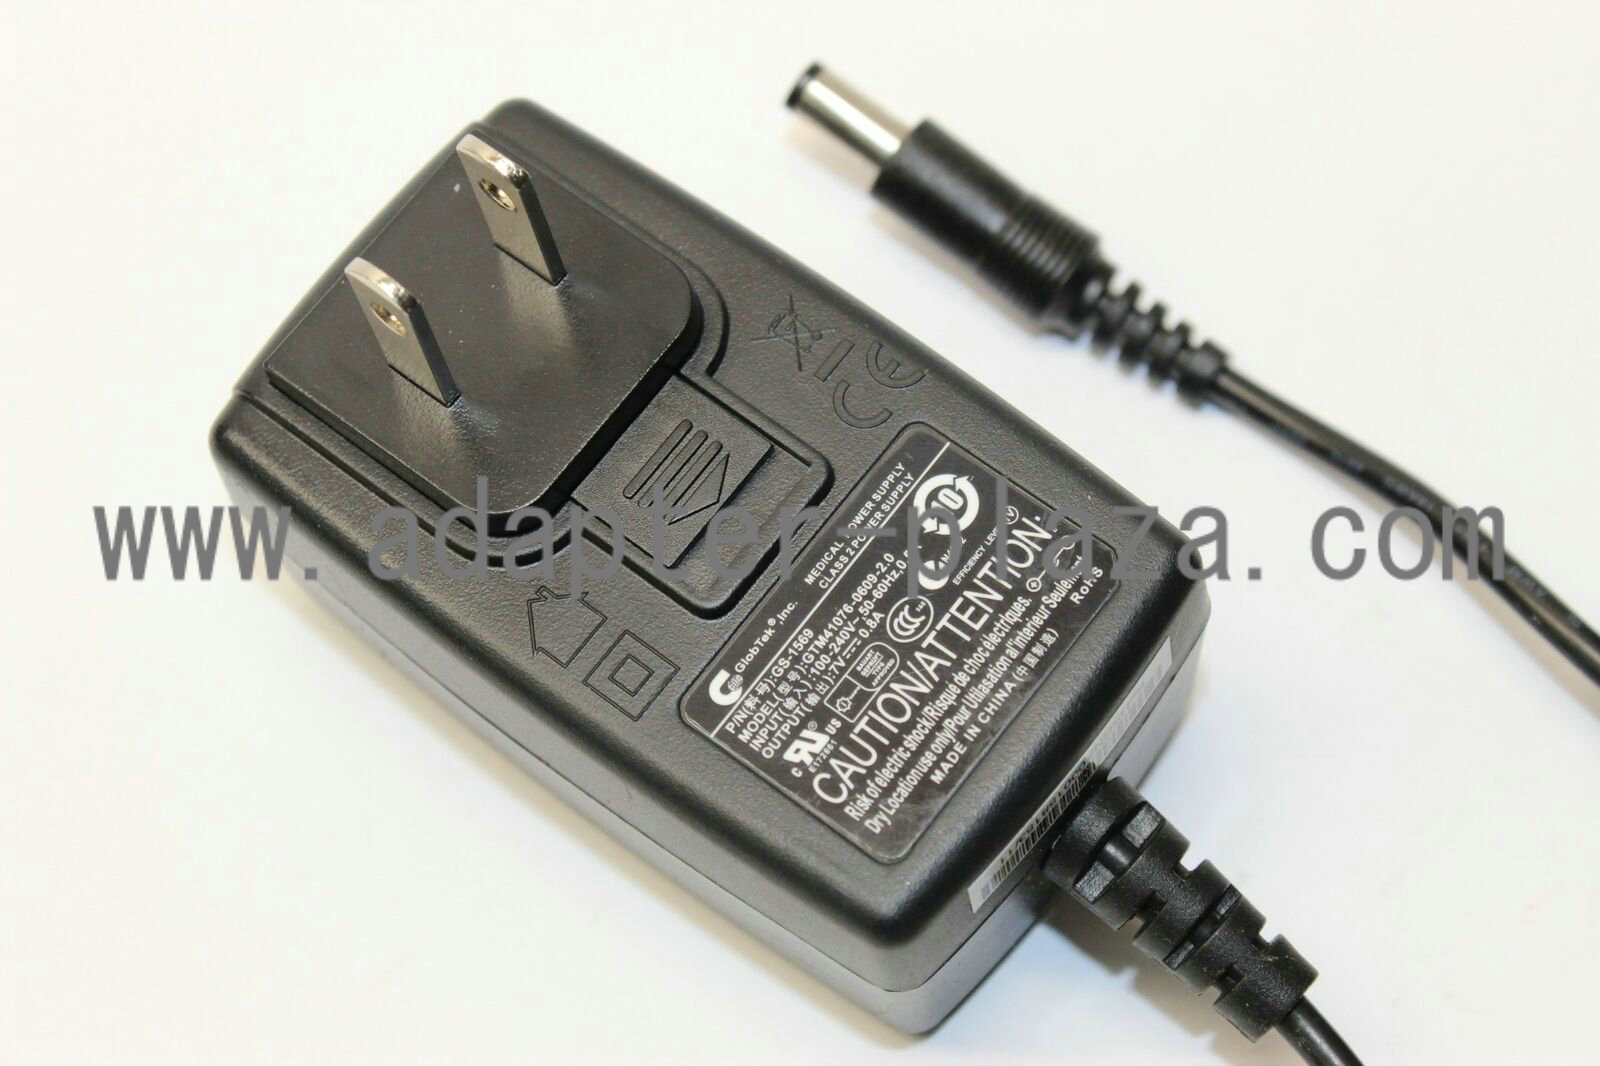 GlobTek GTM41076-0609-2.0 Class 2 Medical Power Supply 7V 0.8A Adapter